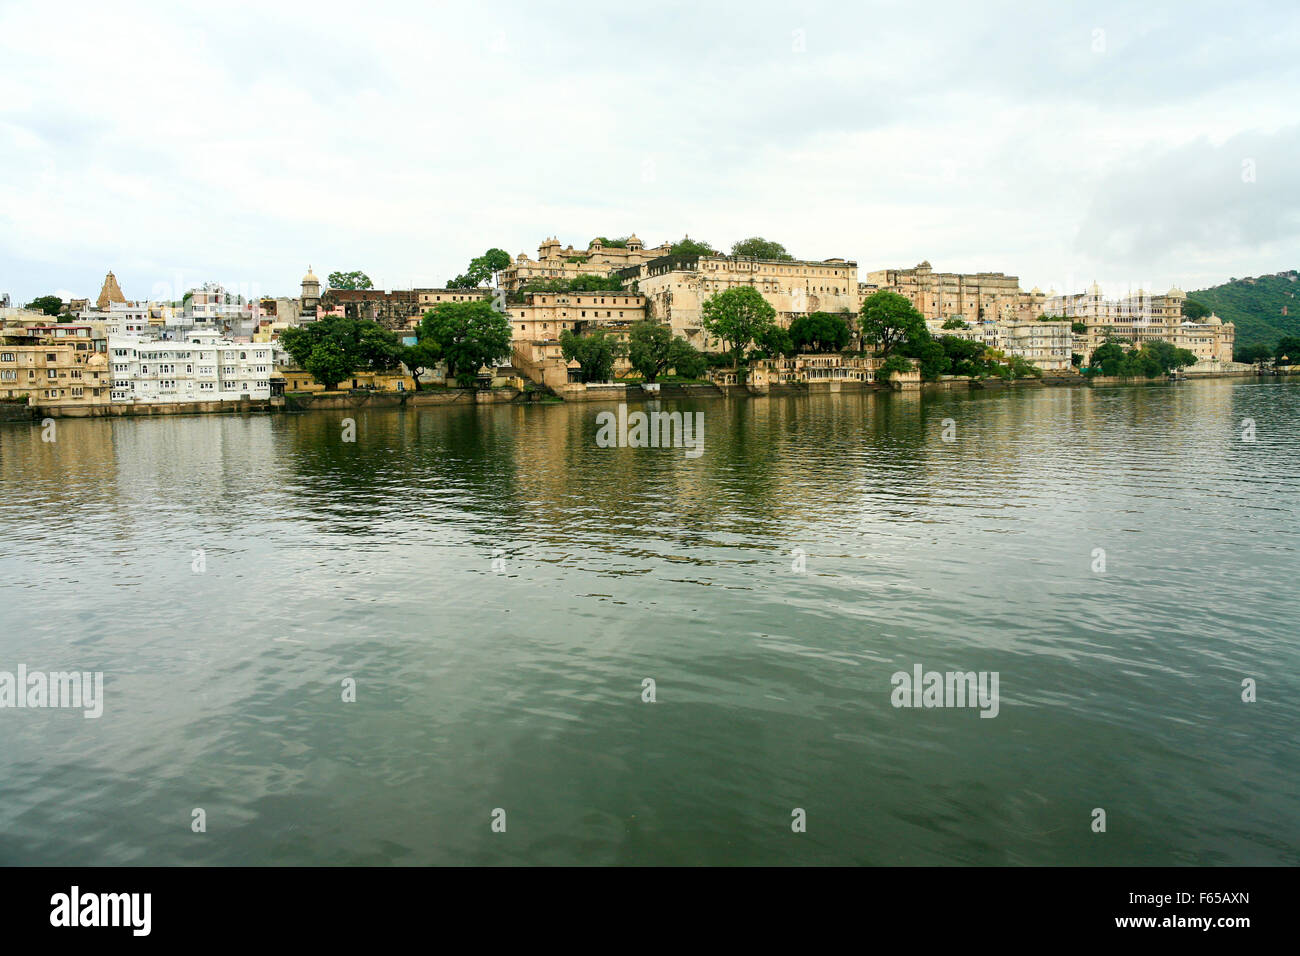 Indien, Rajasthan, Udaipur Stadtbild von Jag Mandir Palace im Pichola-See Stockfoto